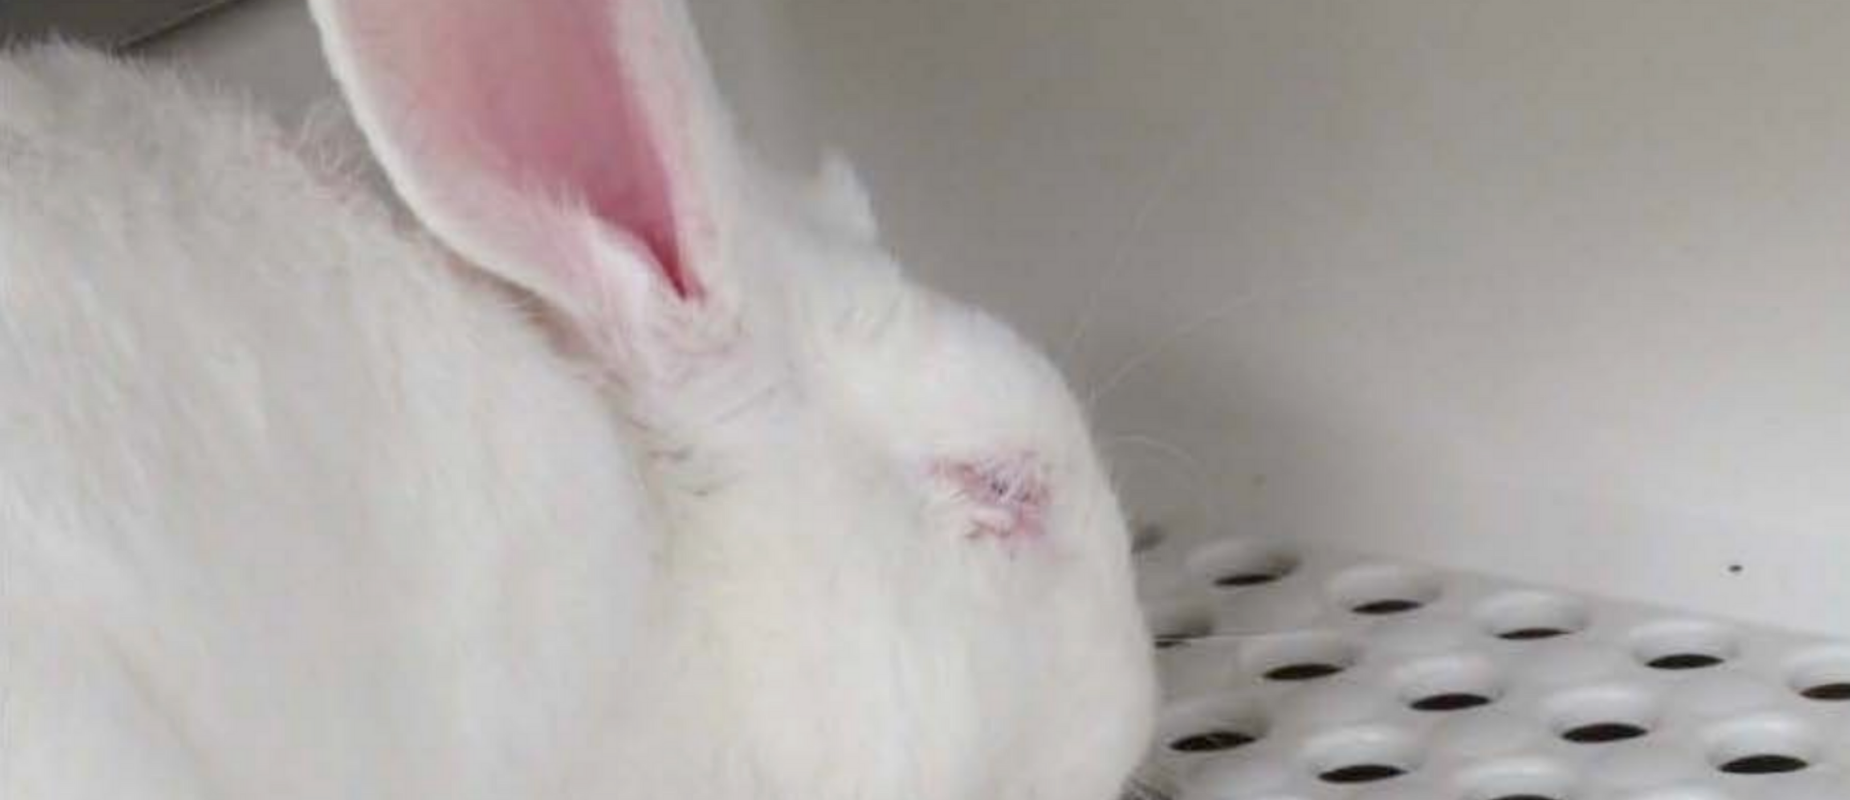 A rabbit in a cage at Vanderbilt displays an eye swollen shut